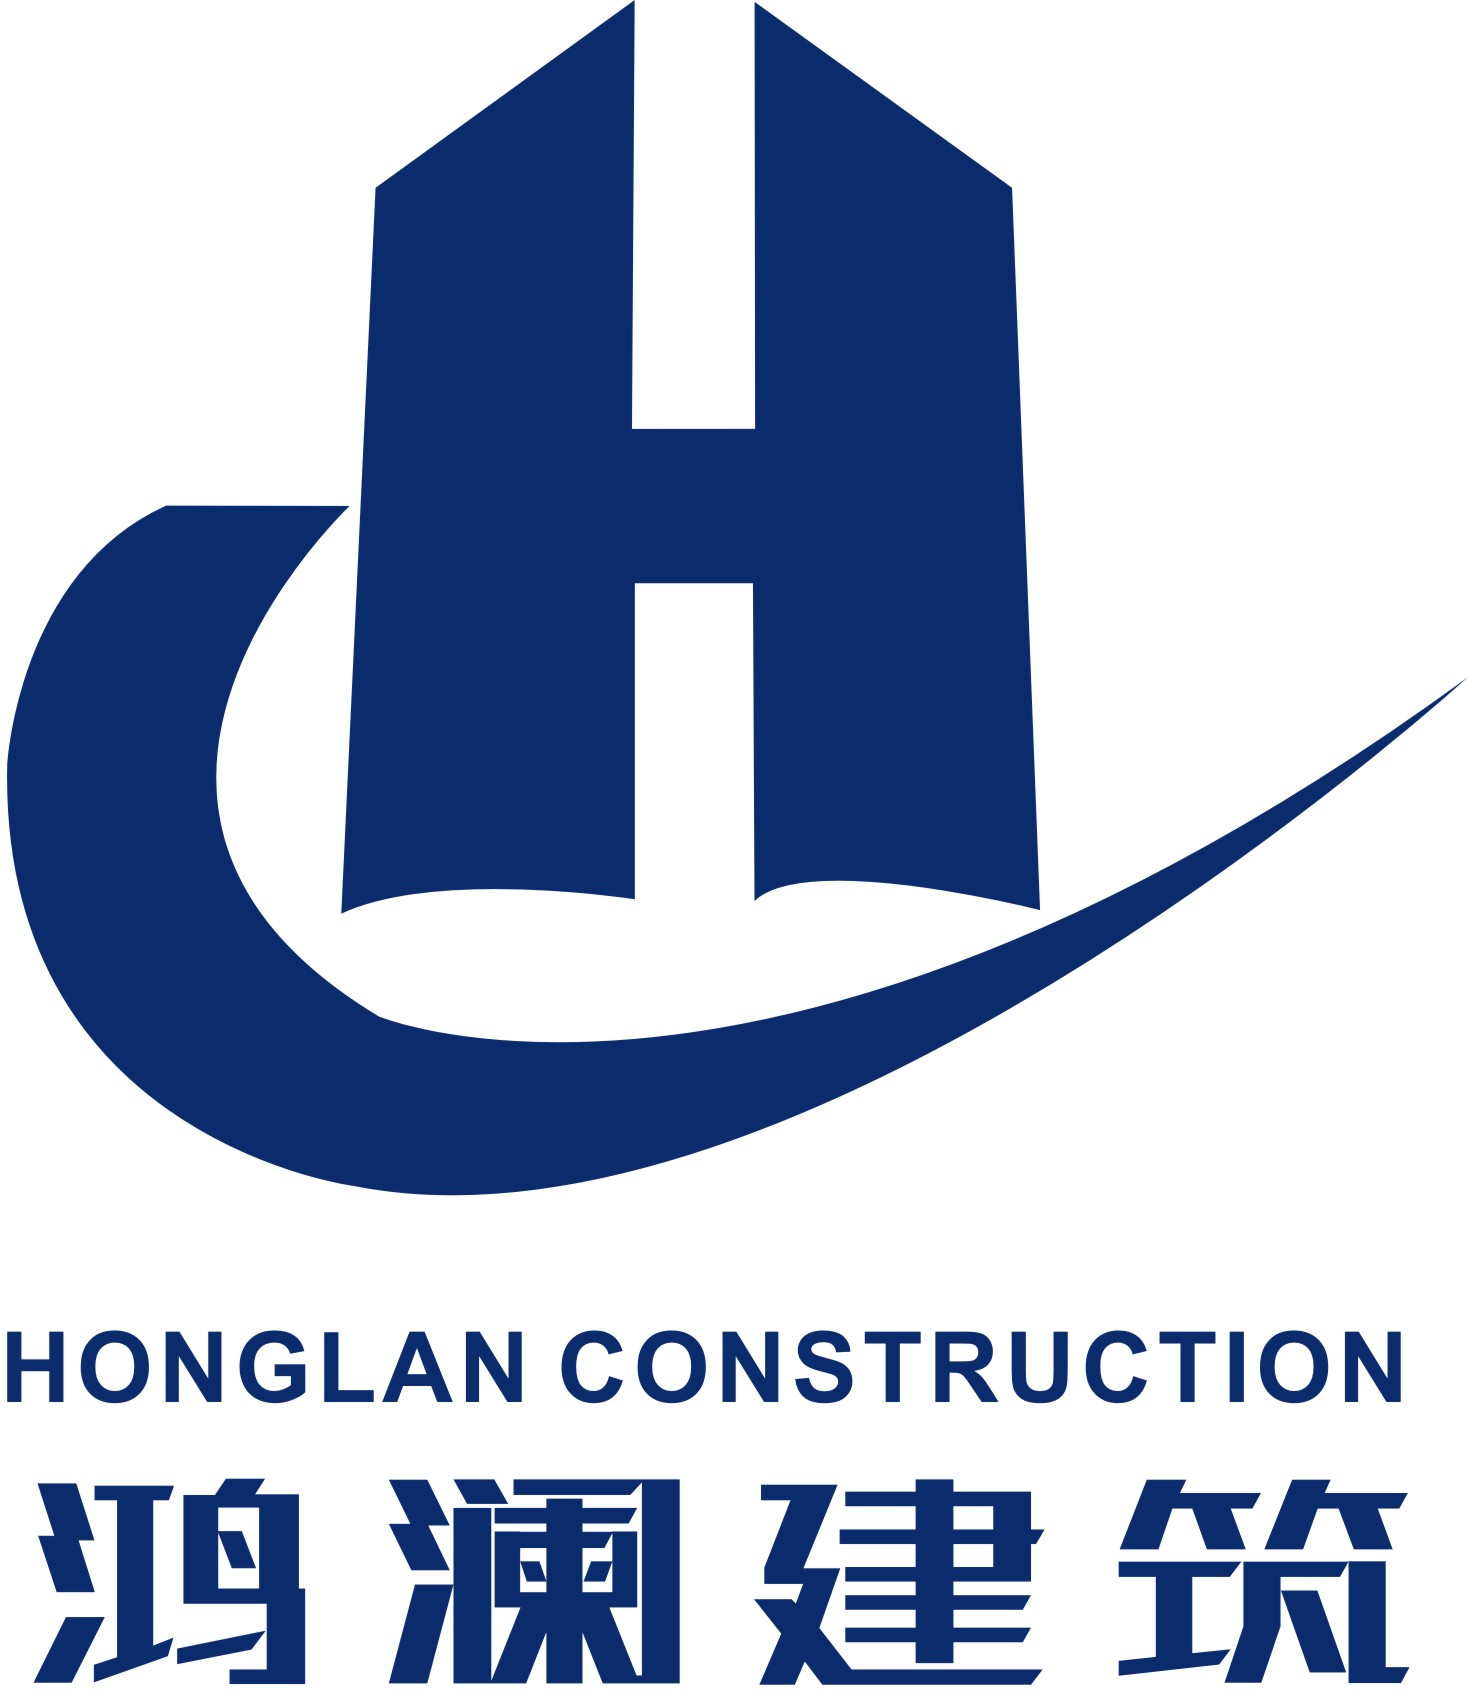 建筑企业logo图片大全图片